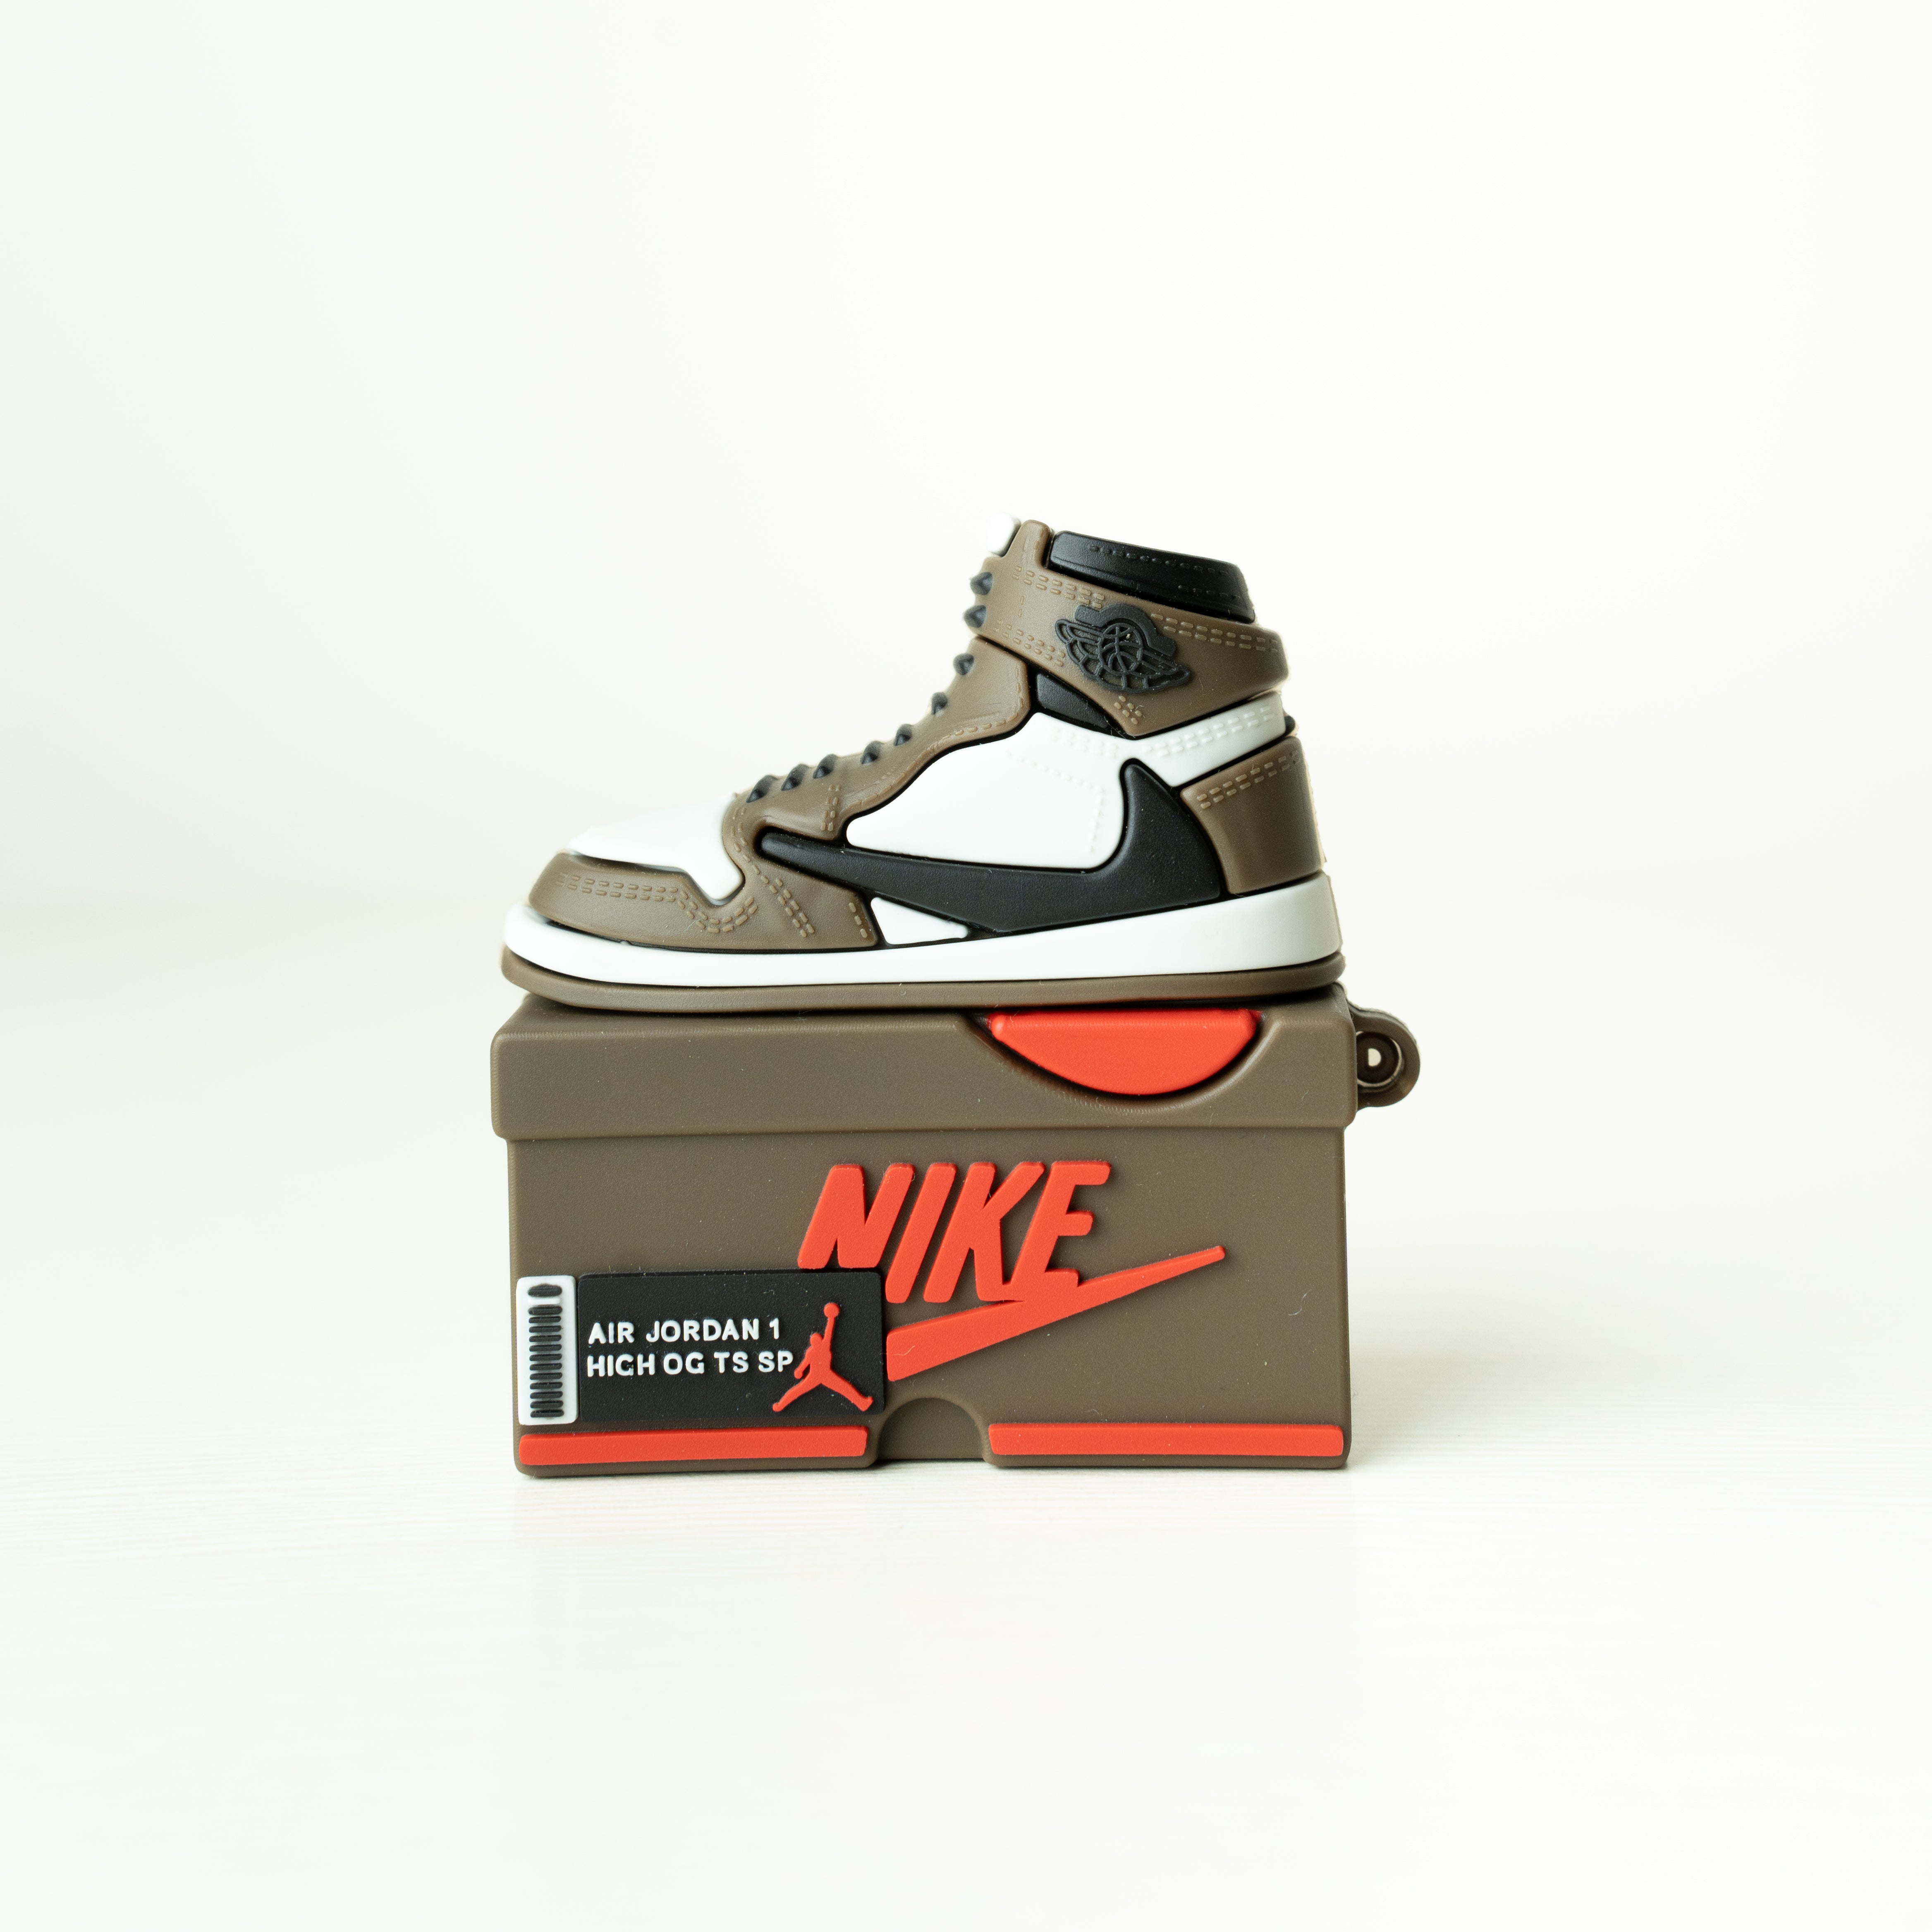 Sneaker Airpods Cases - Air Jordan 1 Reverse Moca